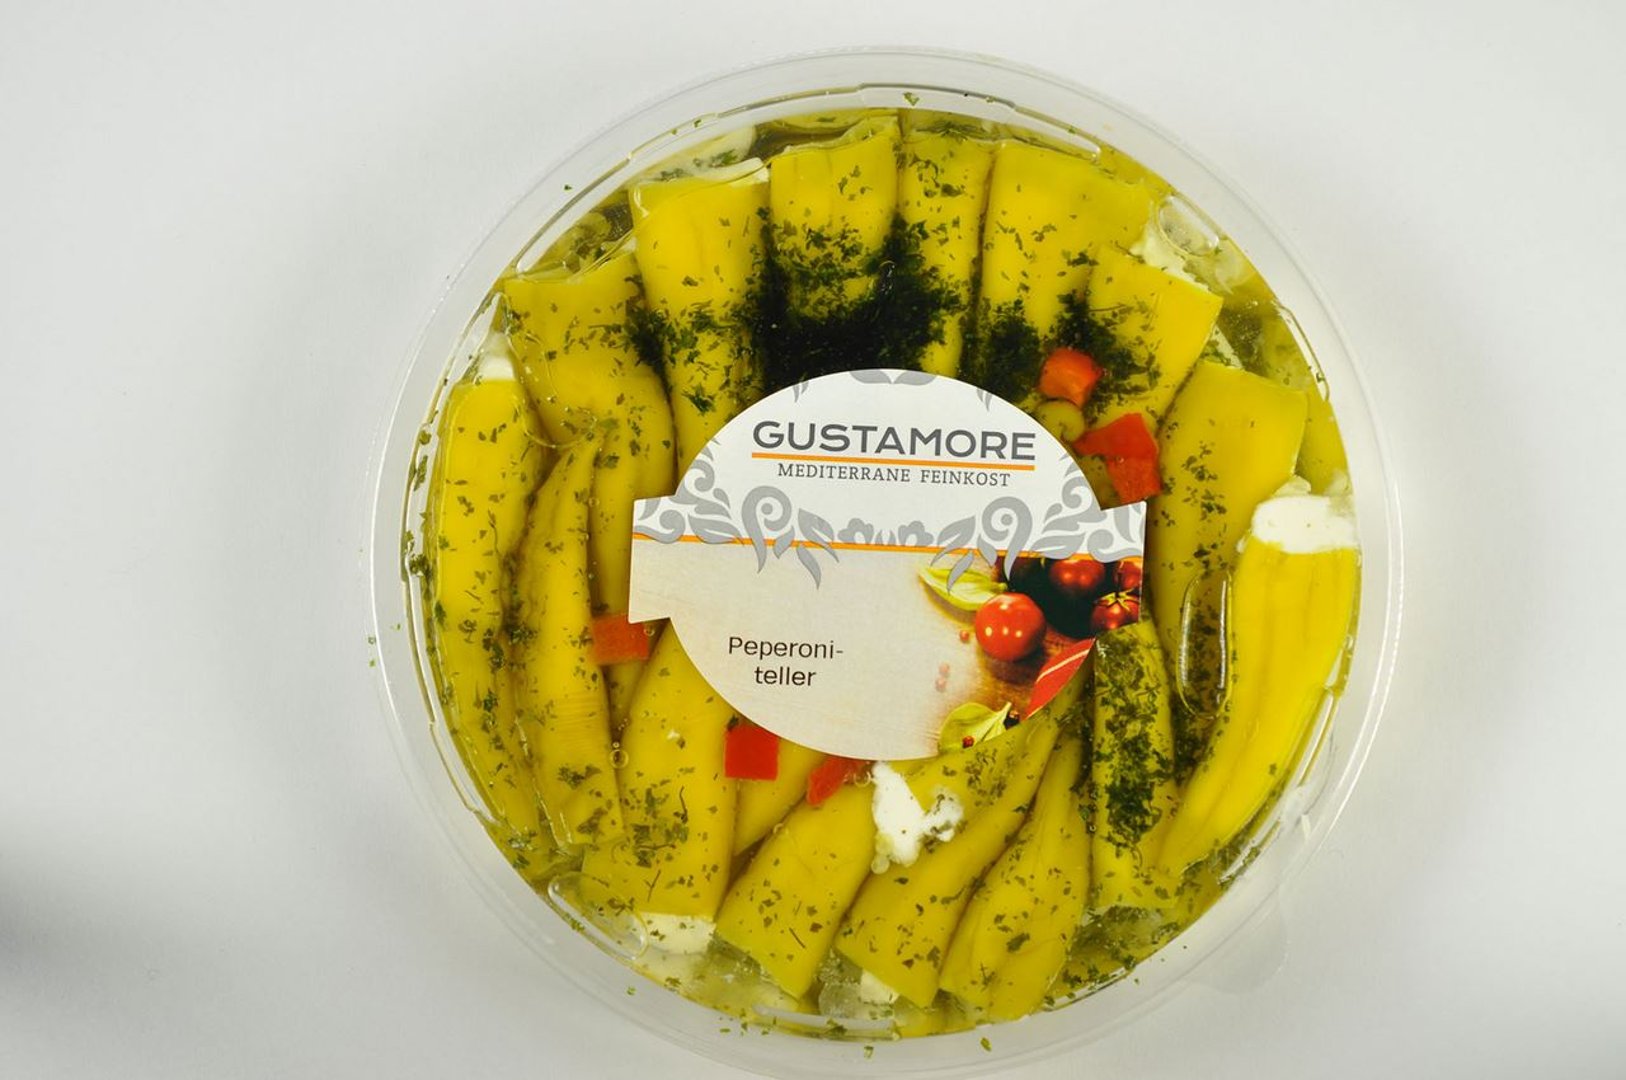 Gustamore - Peperoniteller Milde grüne Peperoni mit Frischkäse gefüllt 300 g